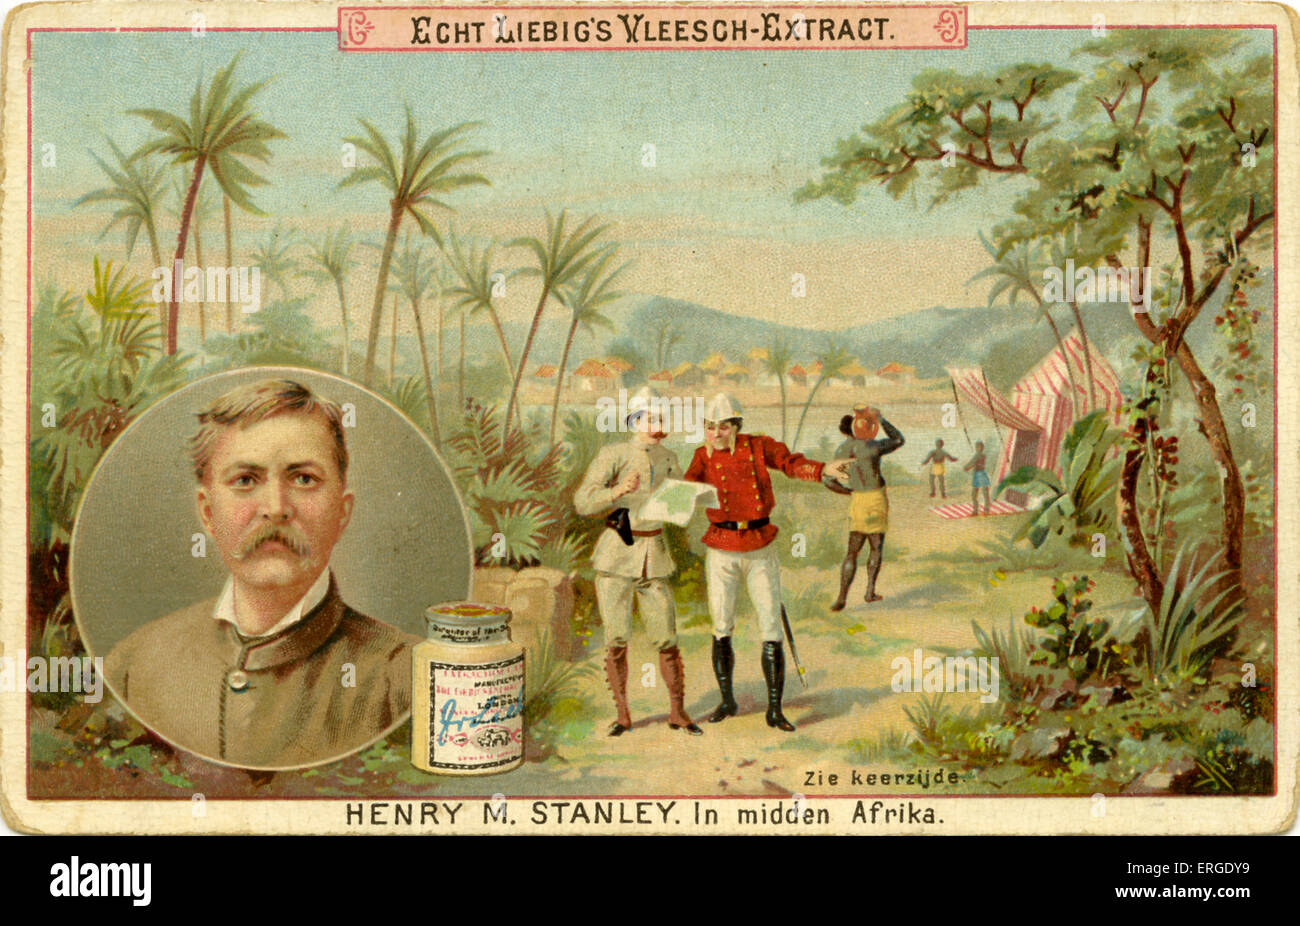 Henry M. Stanley in Zentralafrika. 9 - 1521. Veröffentlicht im Jahr 1891. Liebig Company Reihe von niederländischen Sammelkarten zeigen berühmte Stockfoto